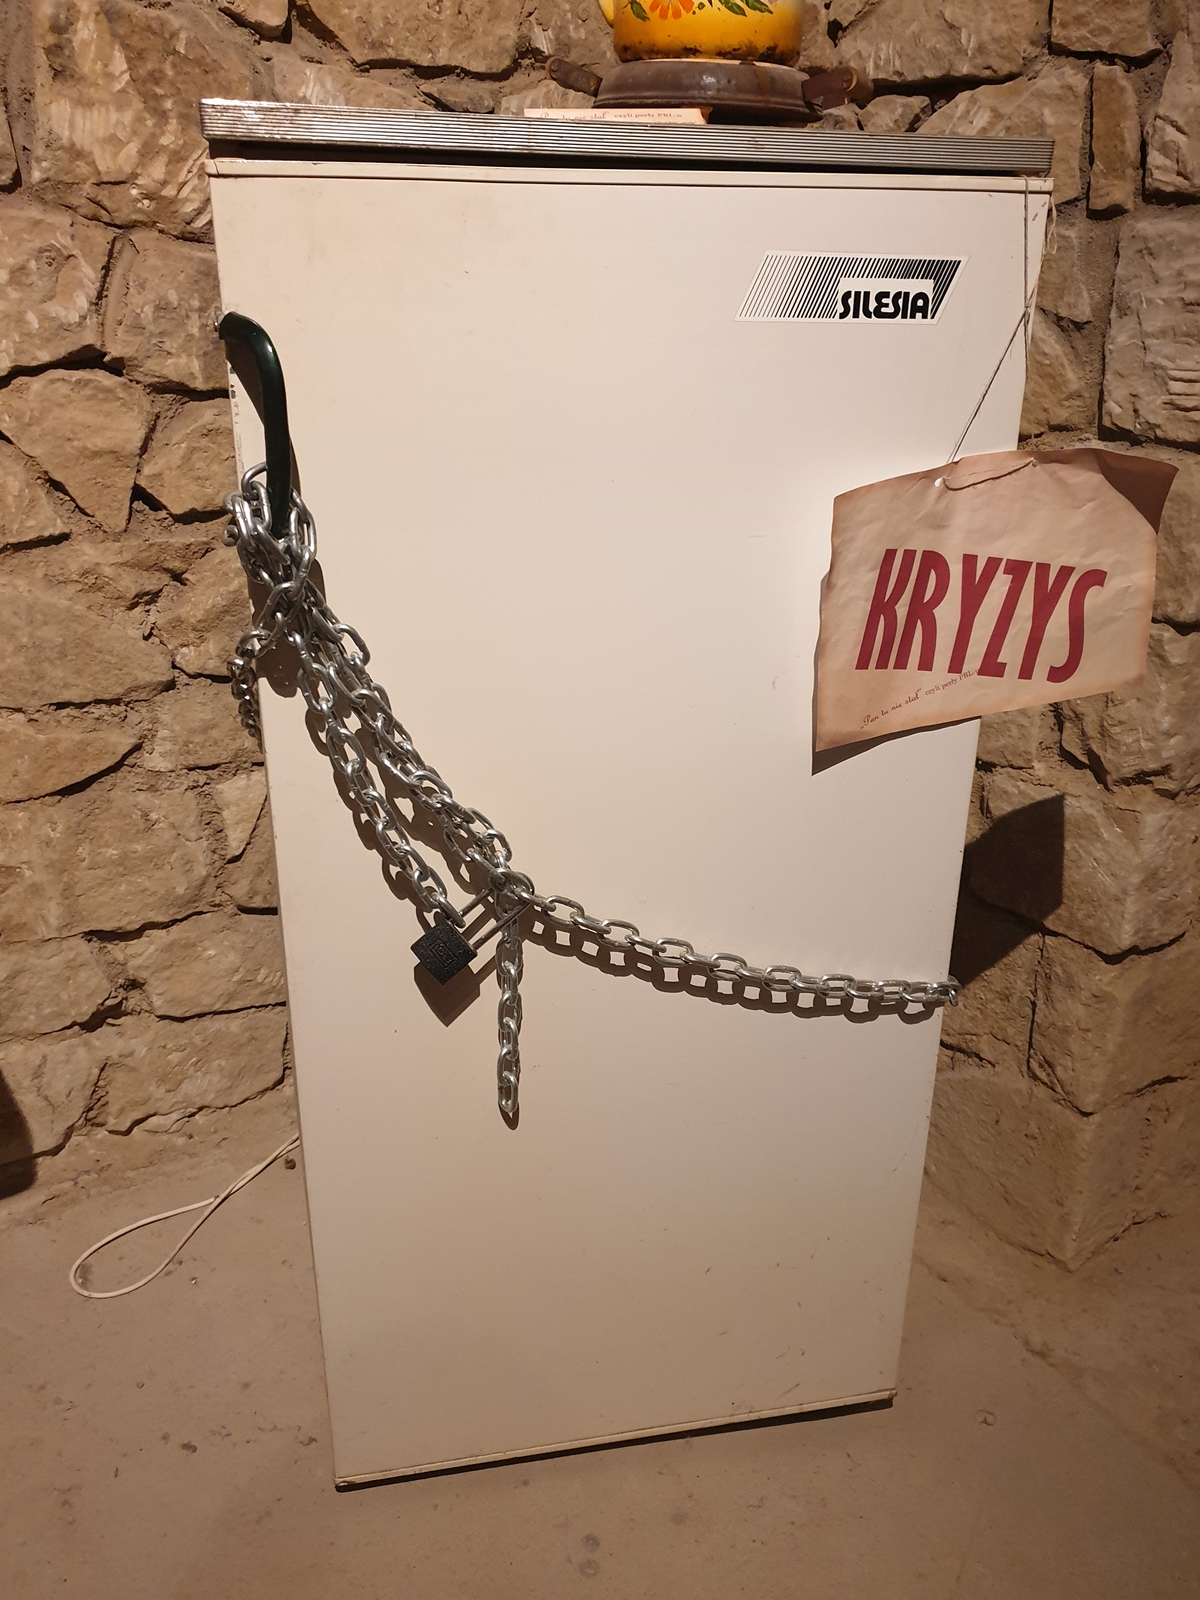 Lodówka zabezpieczona łańcuchem z kłódką i kartką kryzys - wystawa w atrakcji Opatowa, czyli w tutejszych podziemiach.